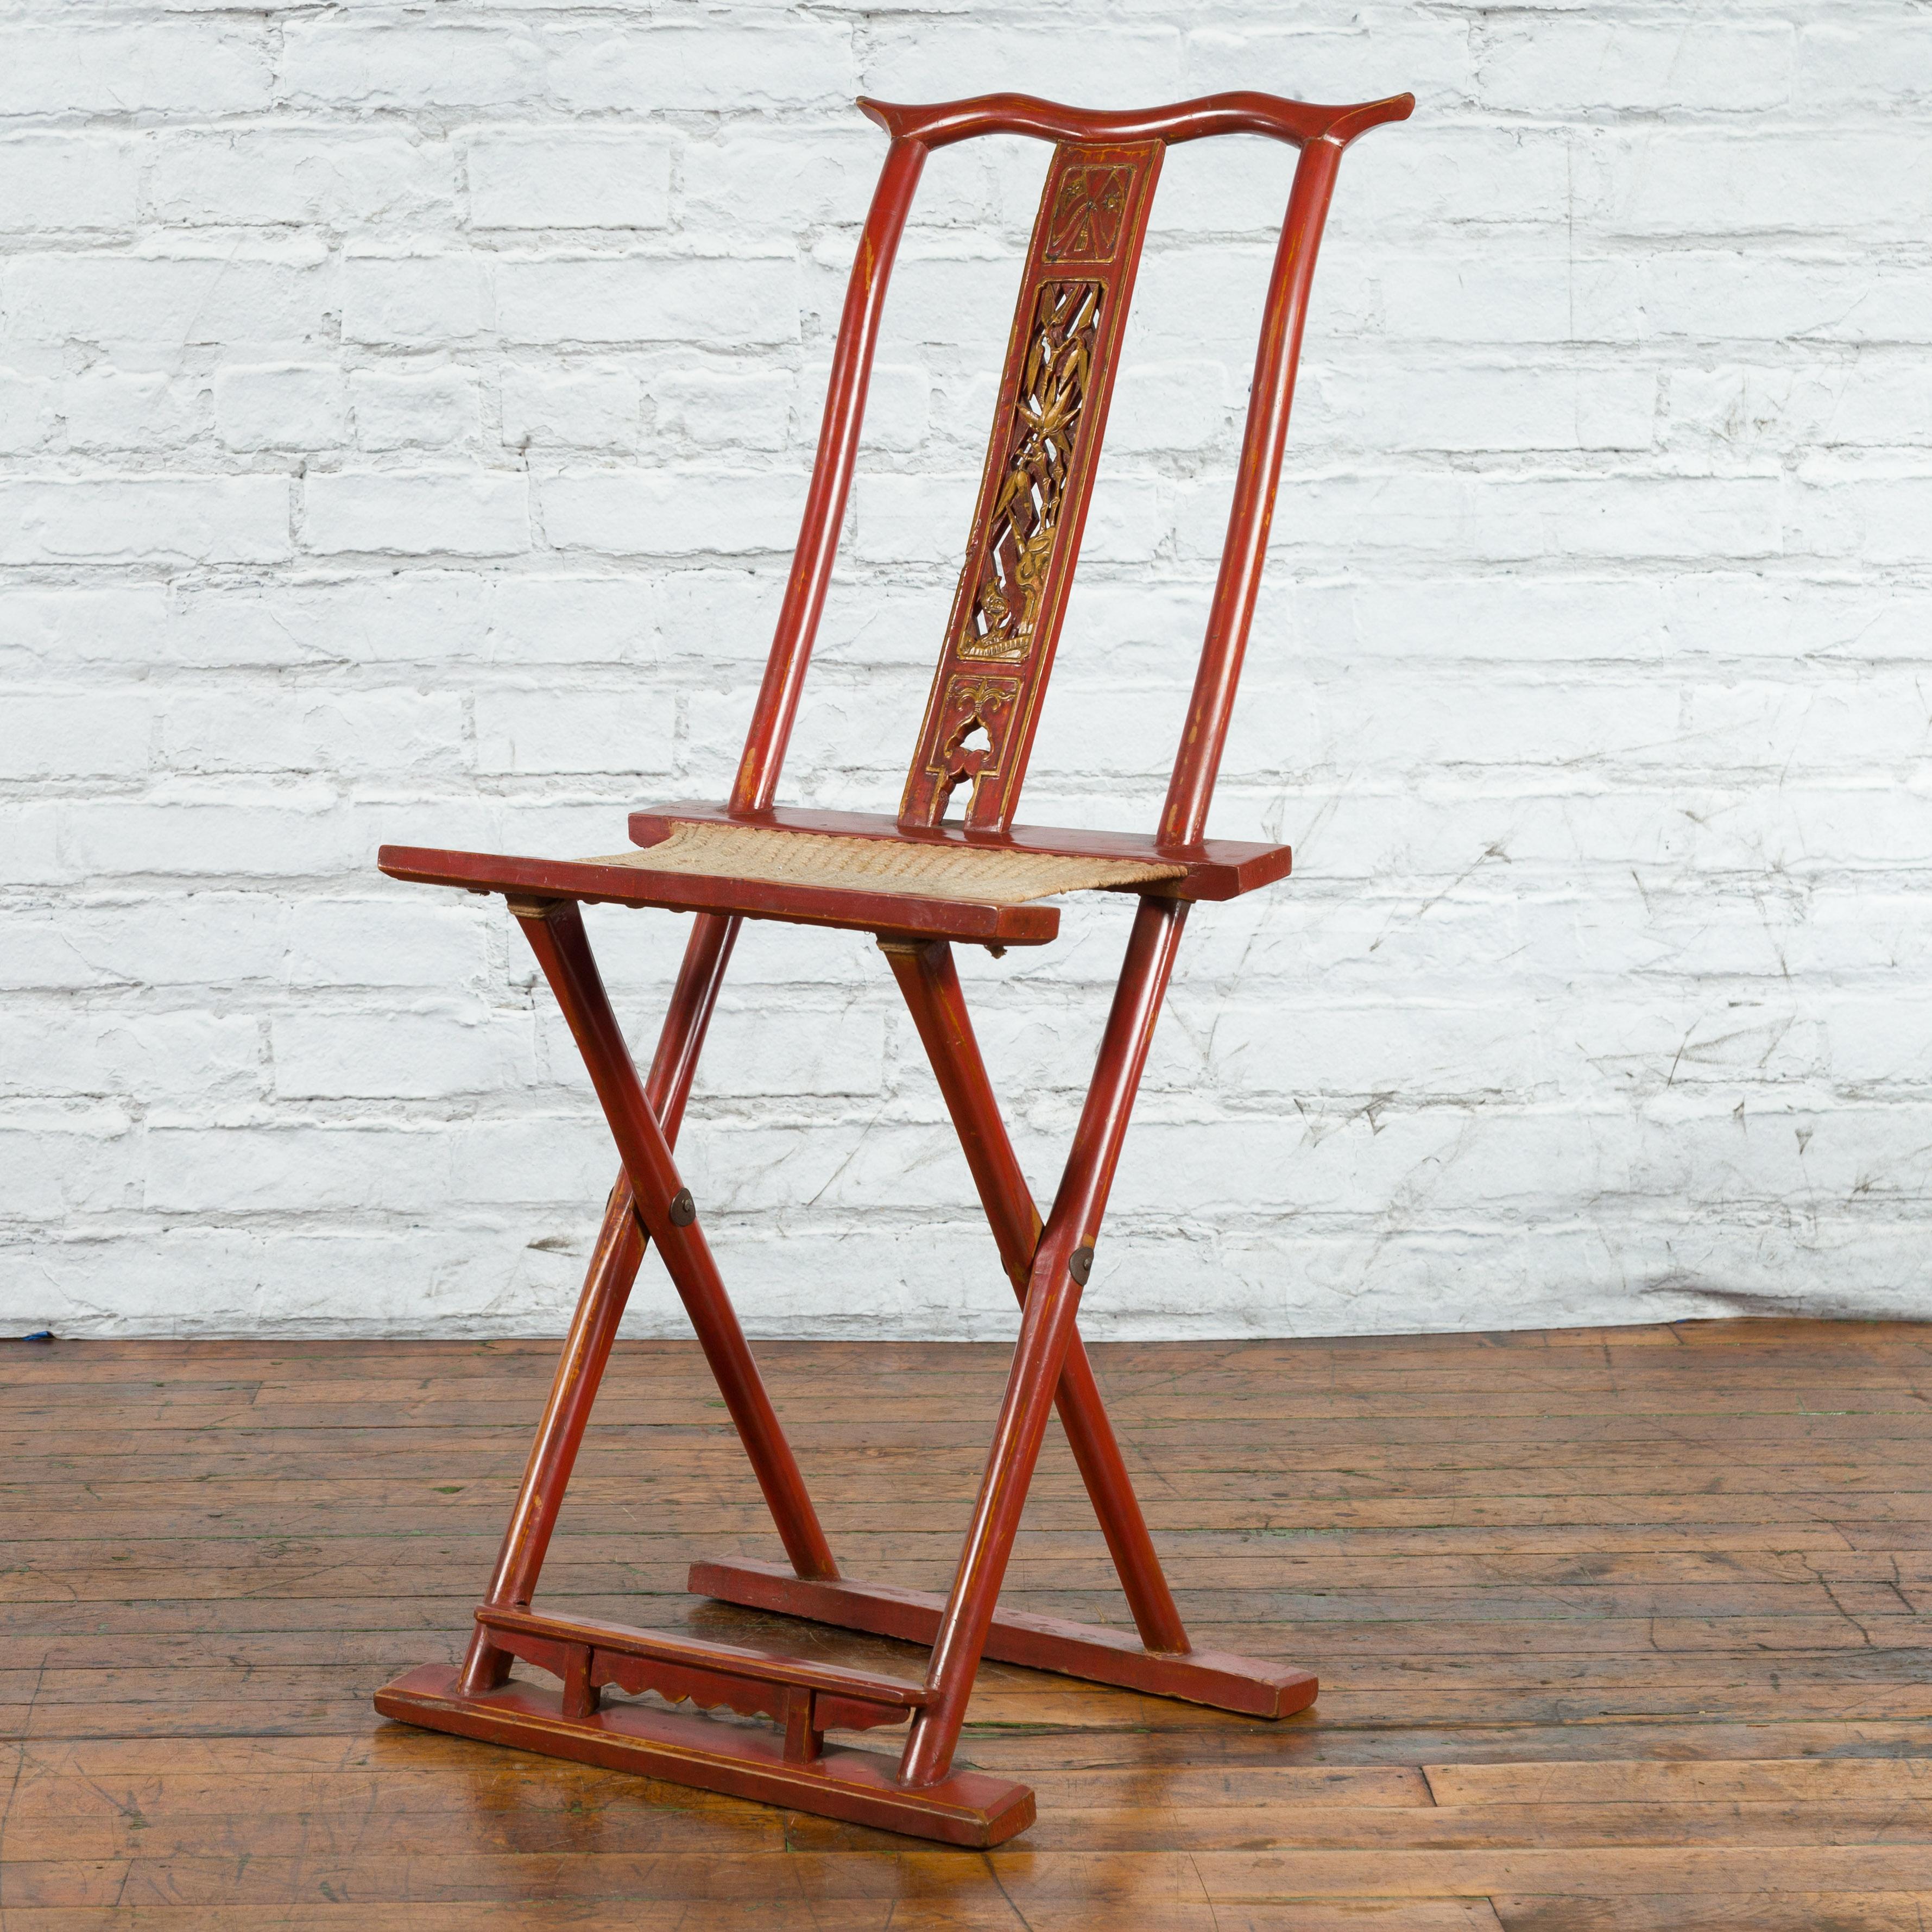 Ancienne chaise de voyage pliante chinoise laquée rouge du début du XXe siècle, avec des motifs sculptés, un repose-pieds et un tissu tissé. Créée en Chine au cours des premières années du XXe siècle, cette chaise pliante présente un corps laqué